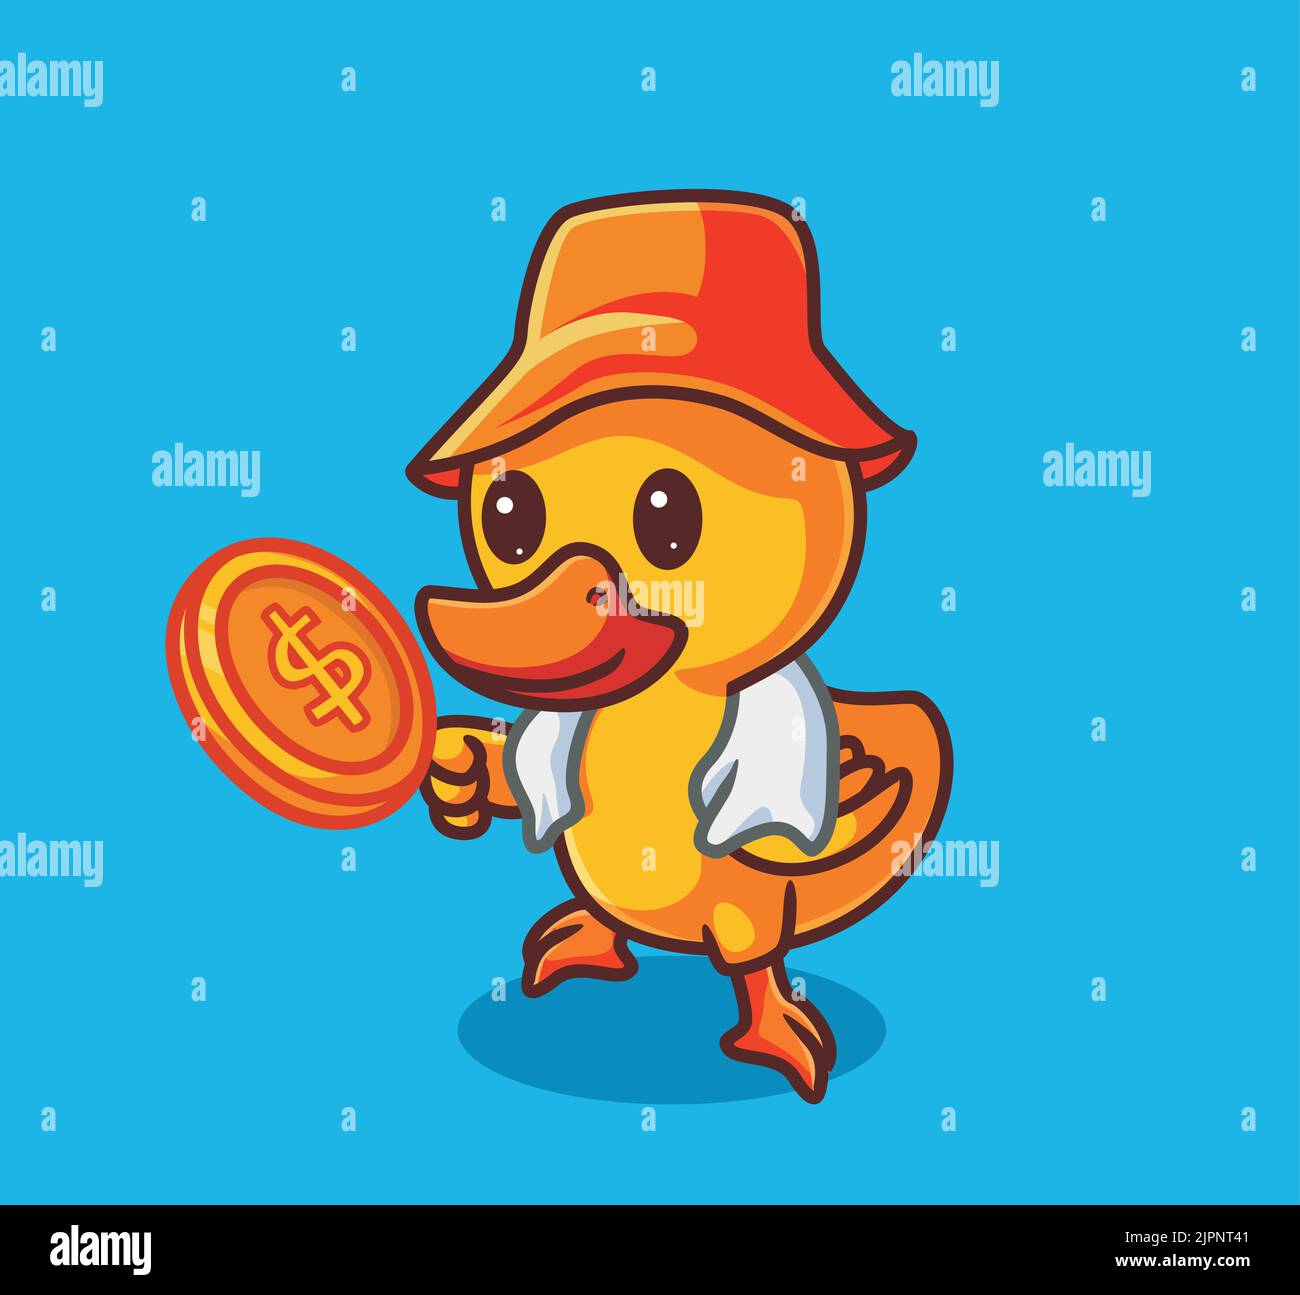 Nette Ente arbeitet hart, um ein Geld zu bekommen. Isolierte Cartoon Tier Natur Illustration. Flat Style Sticker Icon Design Premium Logo Vektor. Mascot Charact Stock Vektor